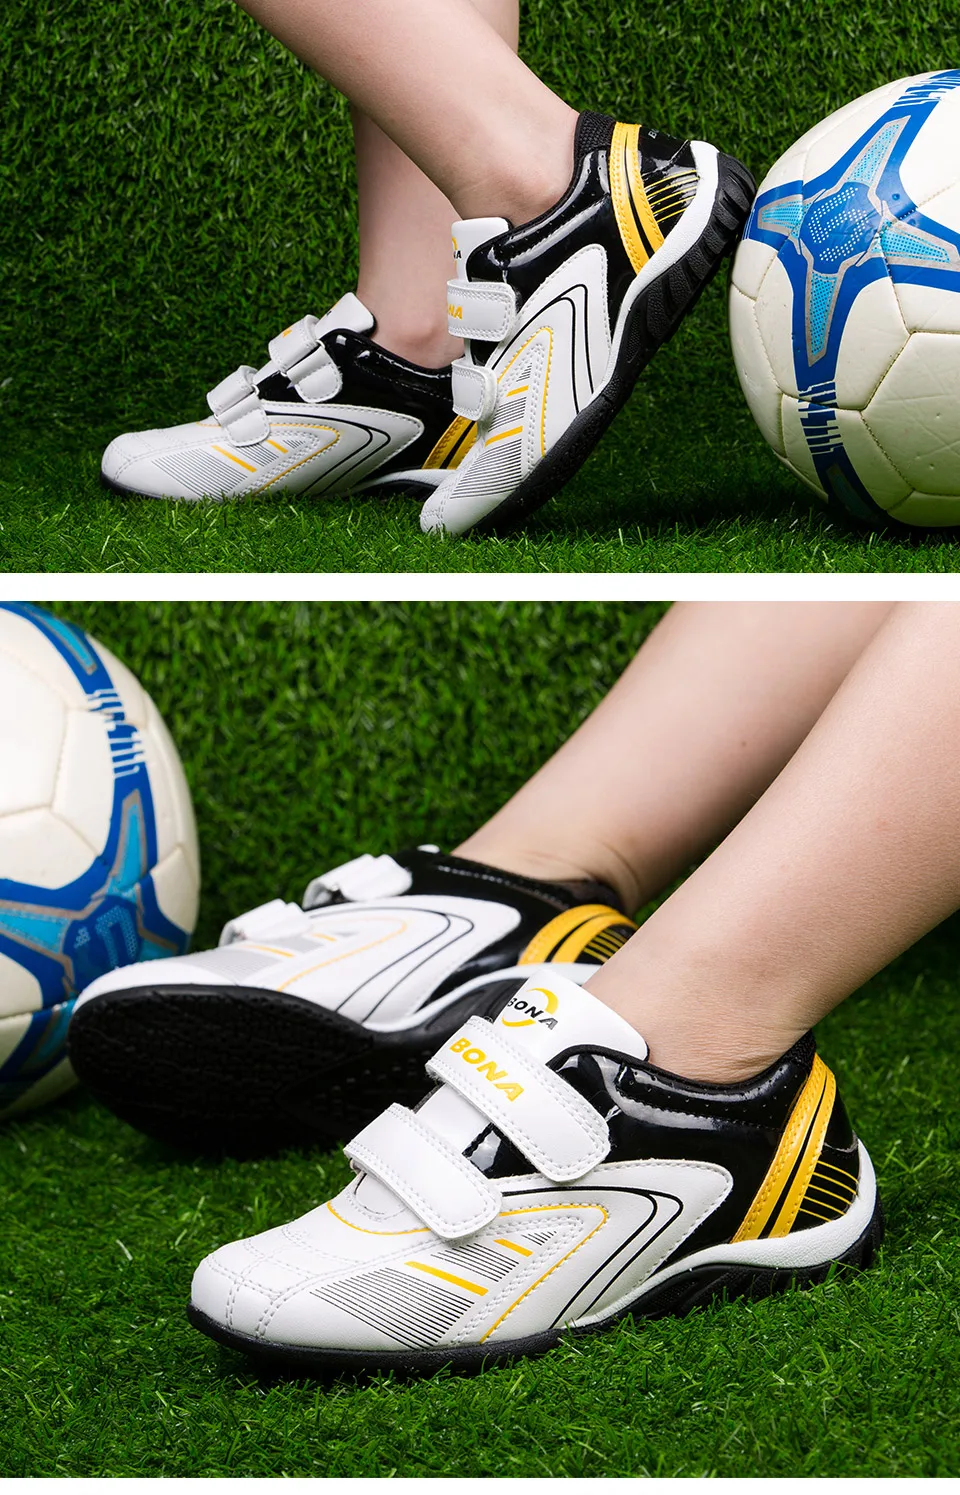 BONA/Новое поступление классический стиль детская повседневная обувь Hook & Loop Обувь для мальчиков открытый кроссовки детские, спортивные